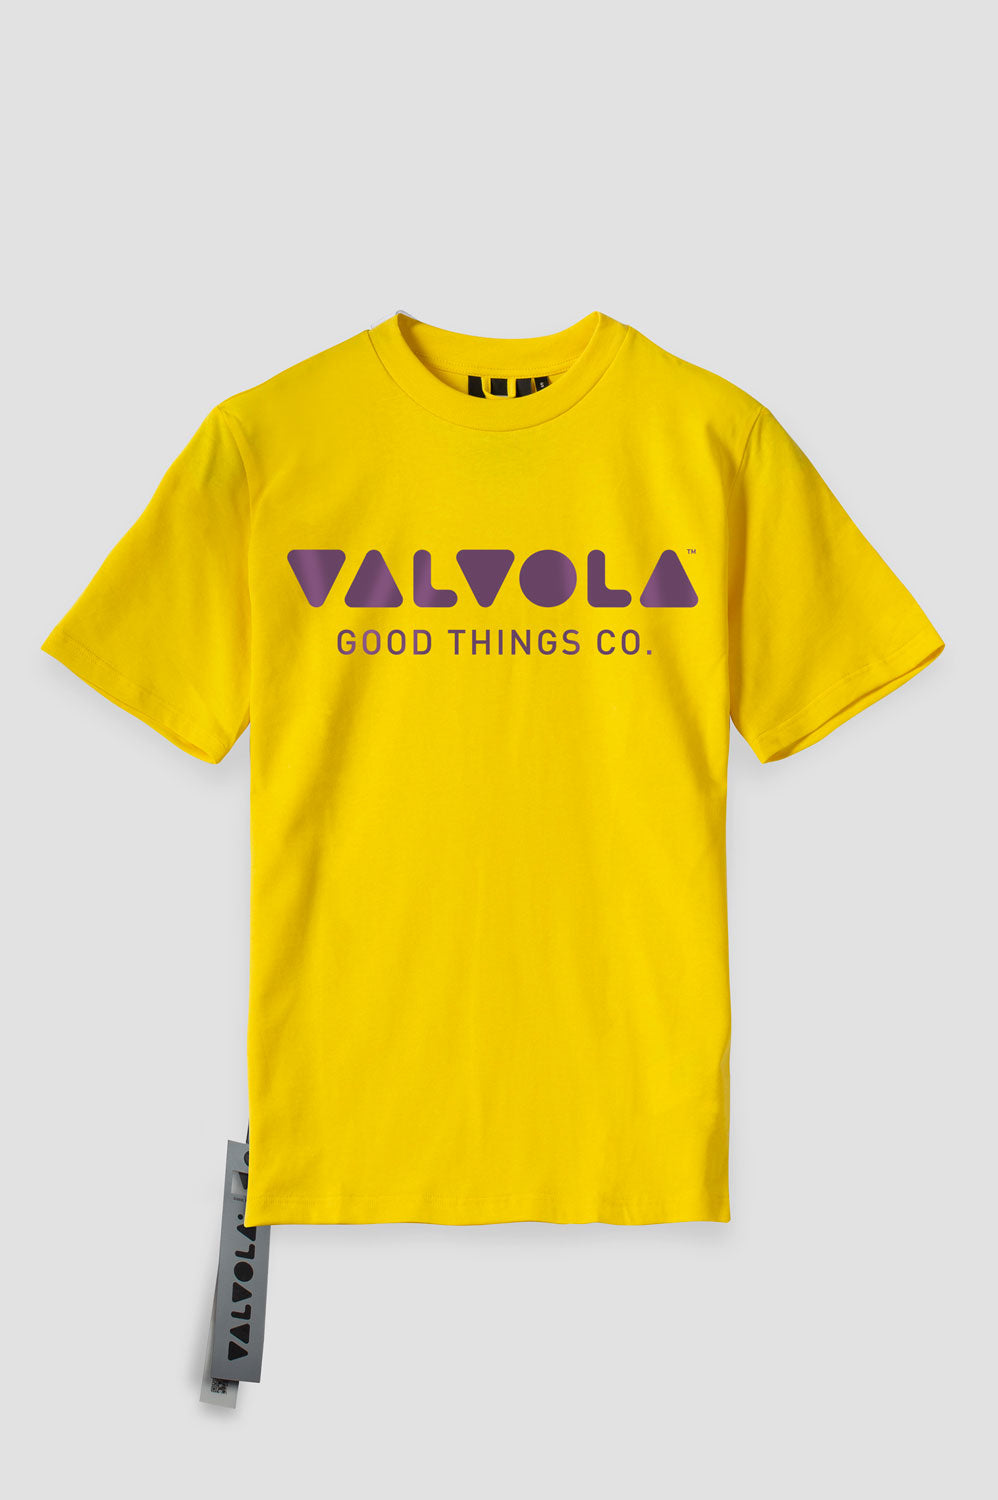 VALVOLA T-SHIRT LOGO COLORE GIALLO & VIOLA